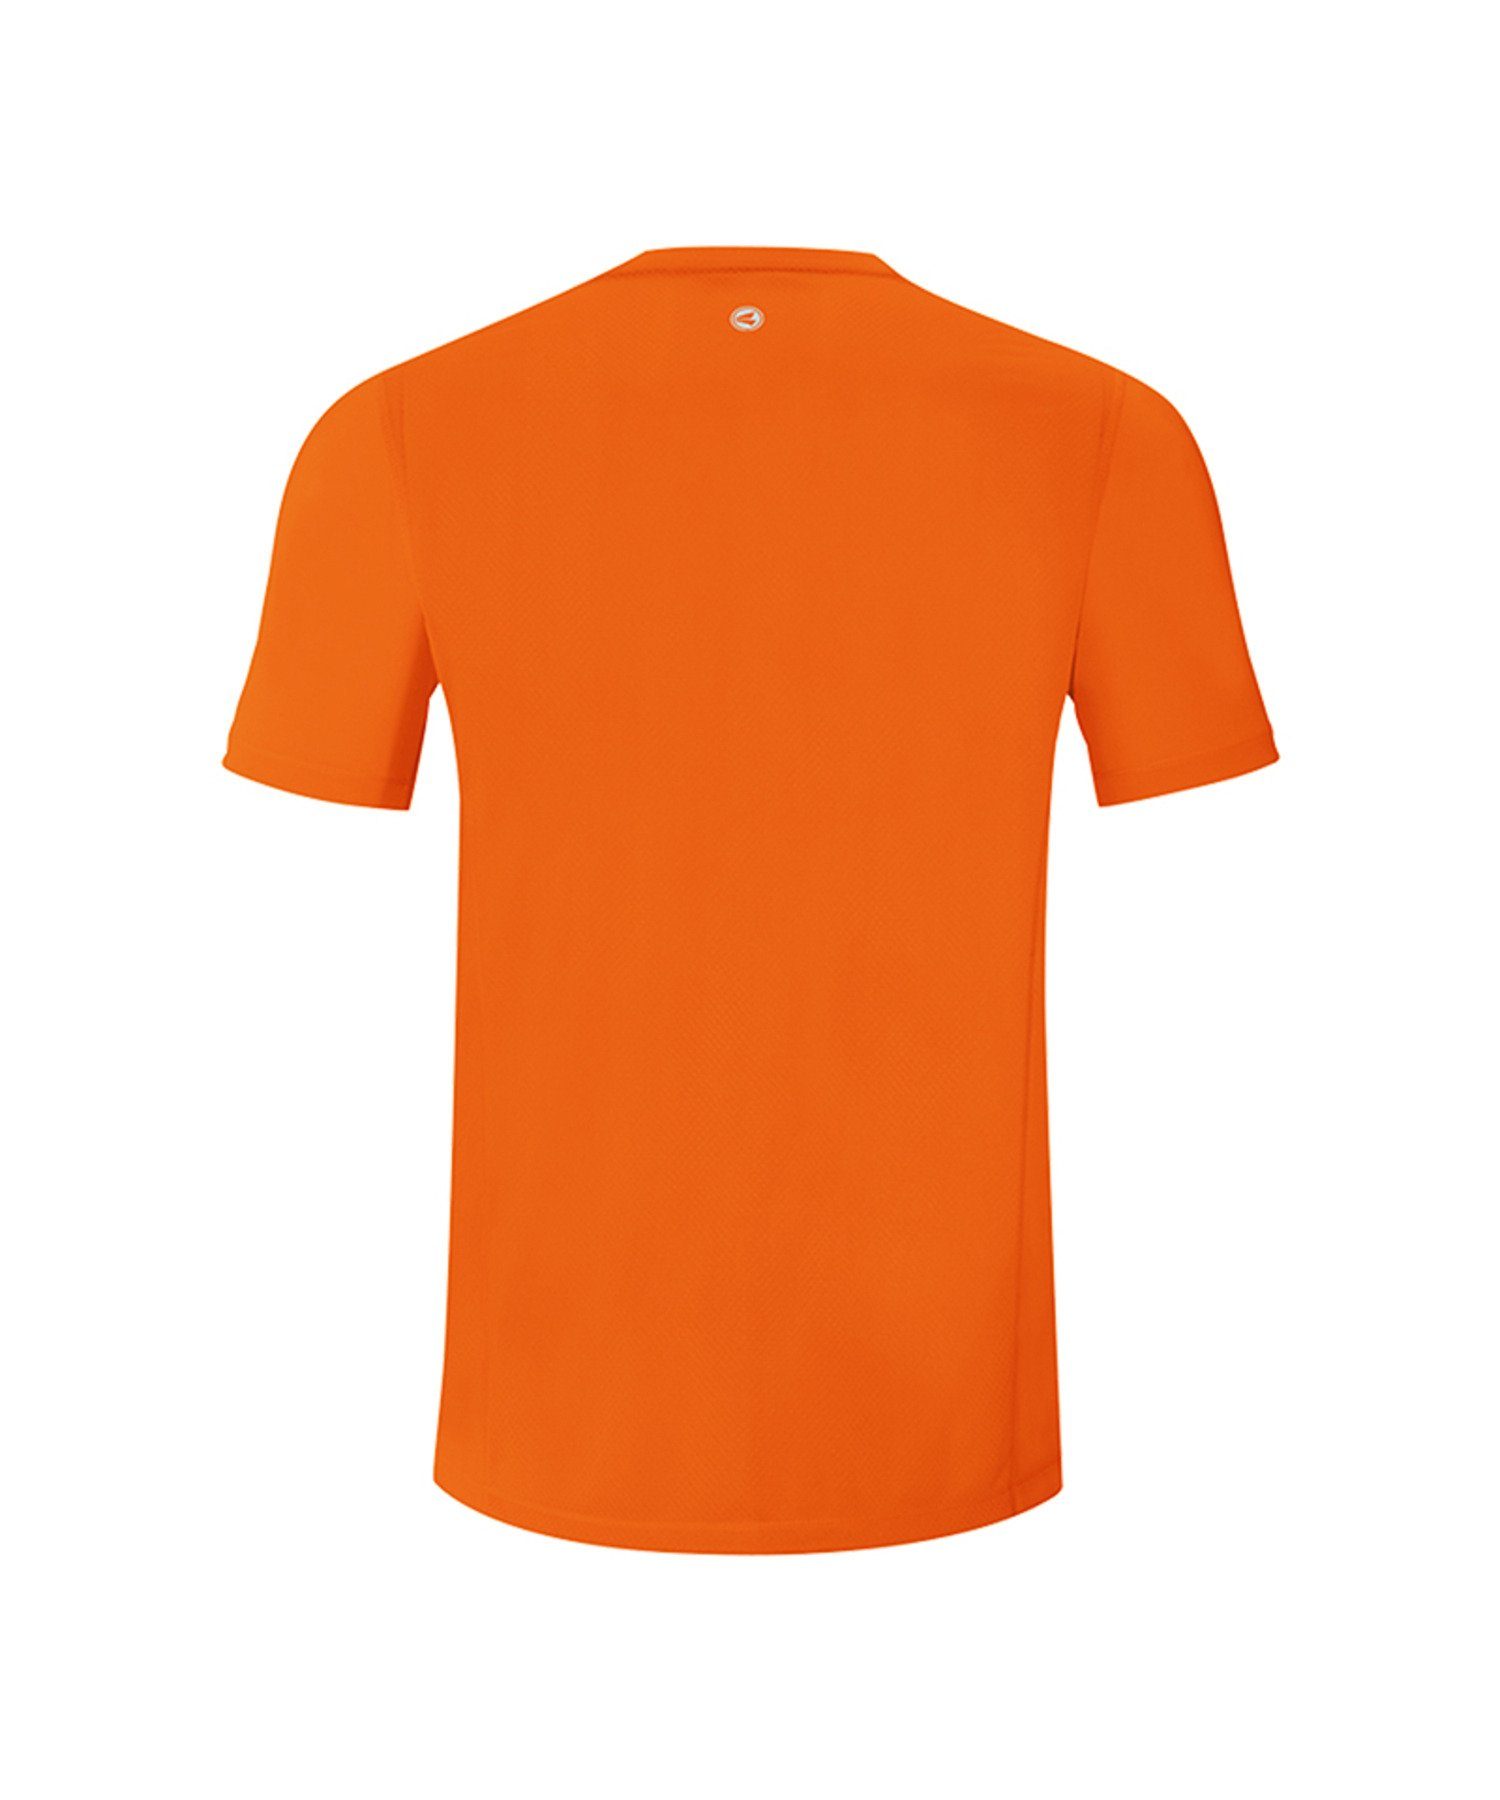 2.0 Jako Laufshirt Orange default Run T-Shirt Kids Running